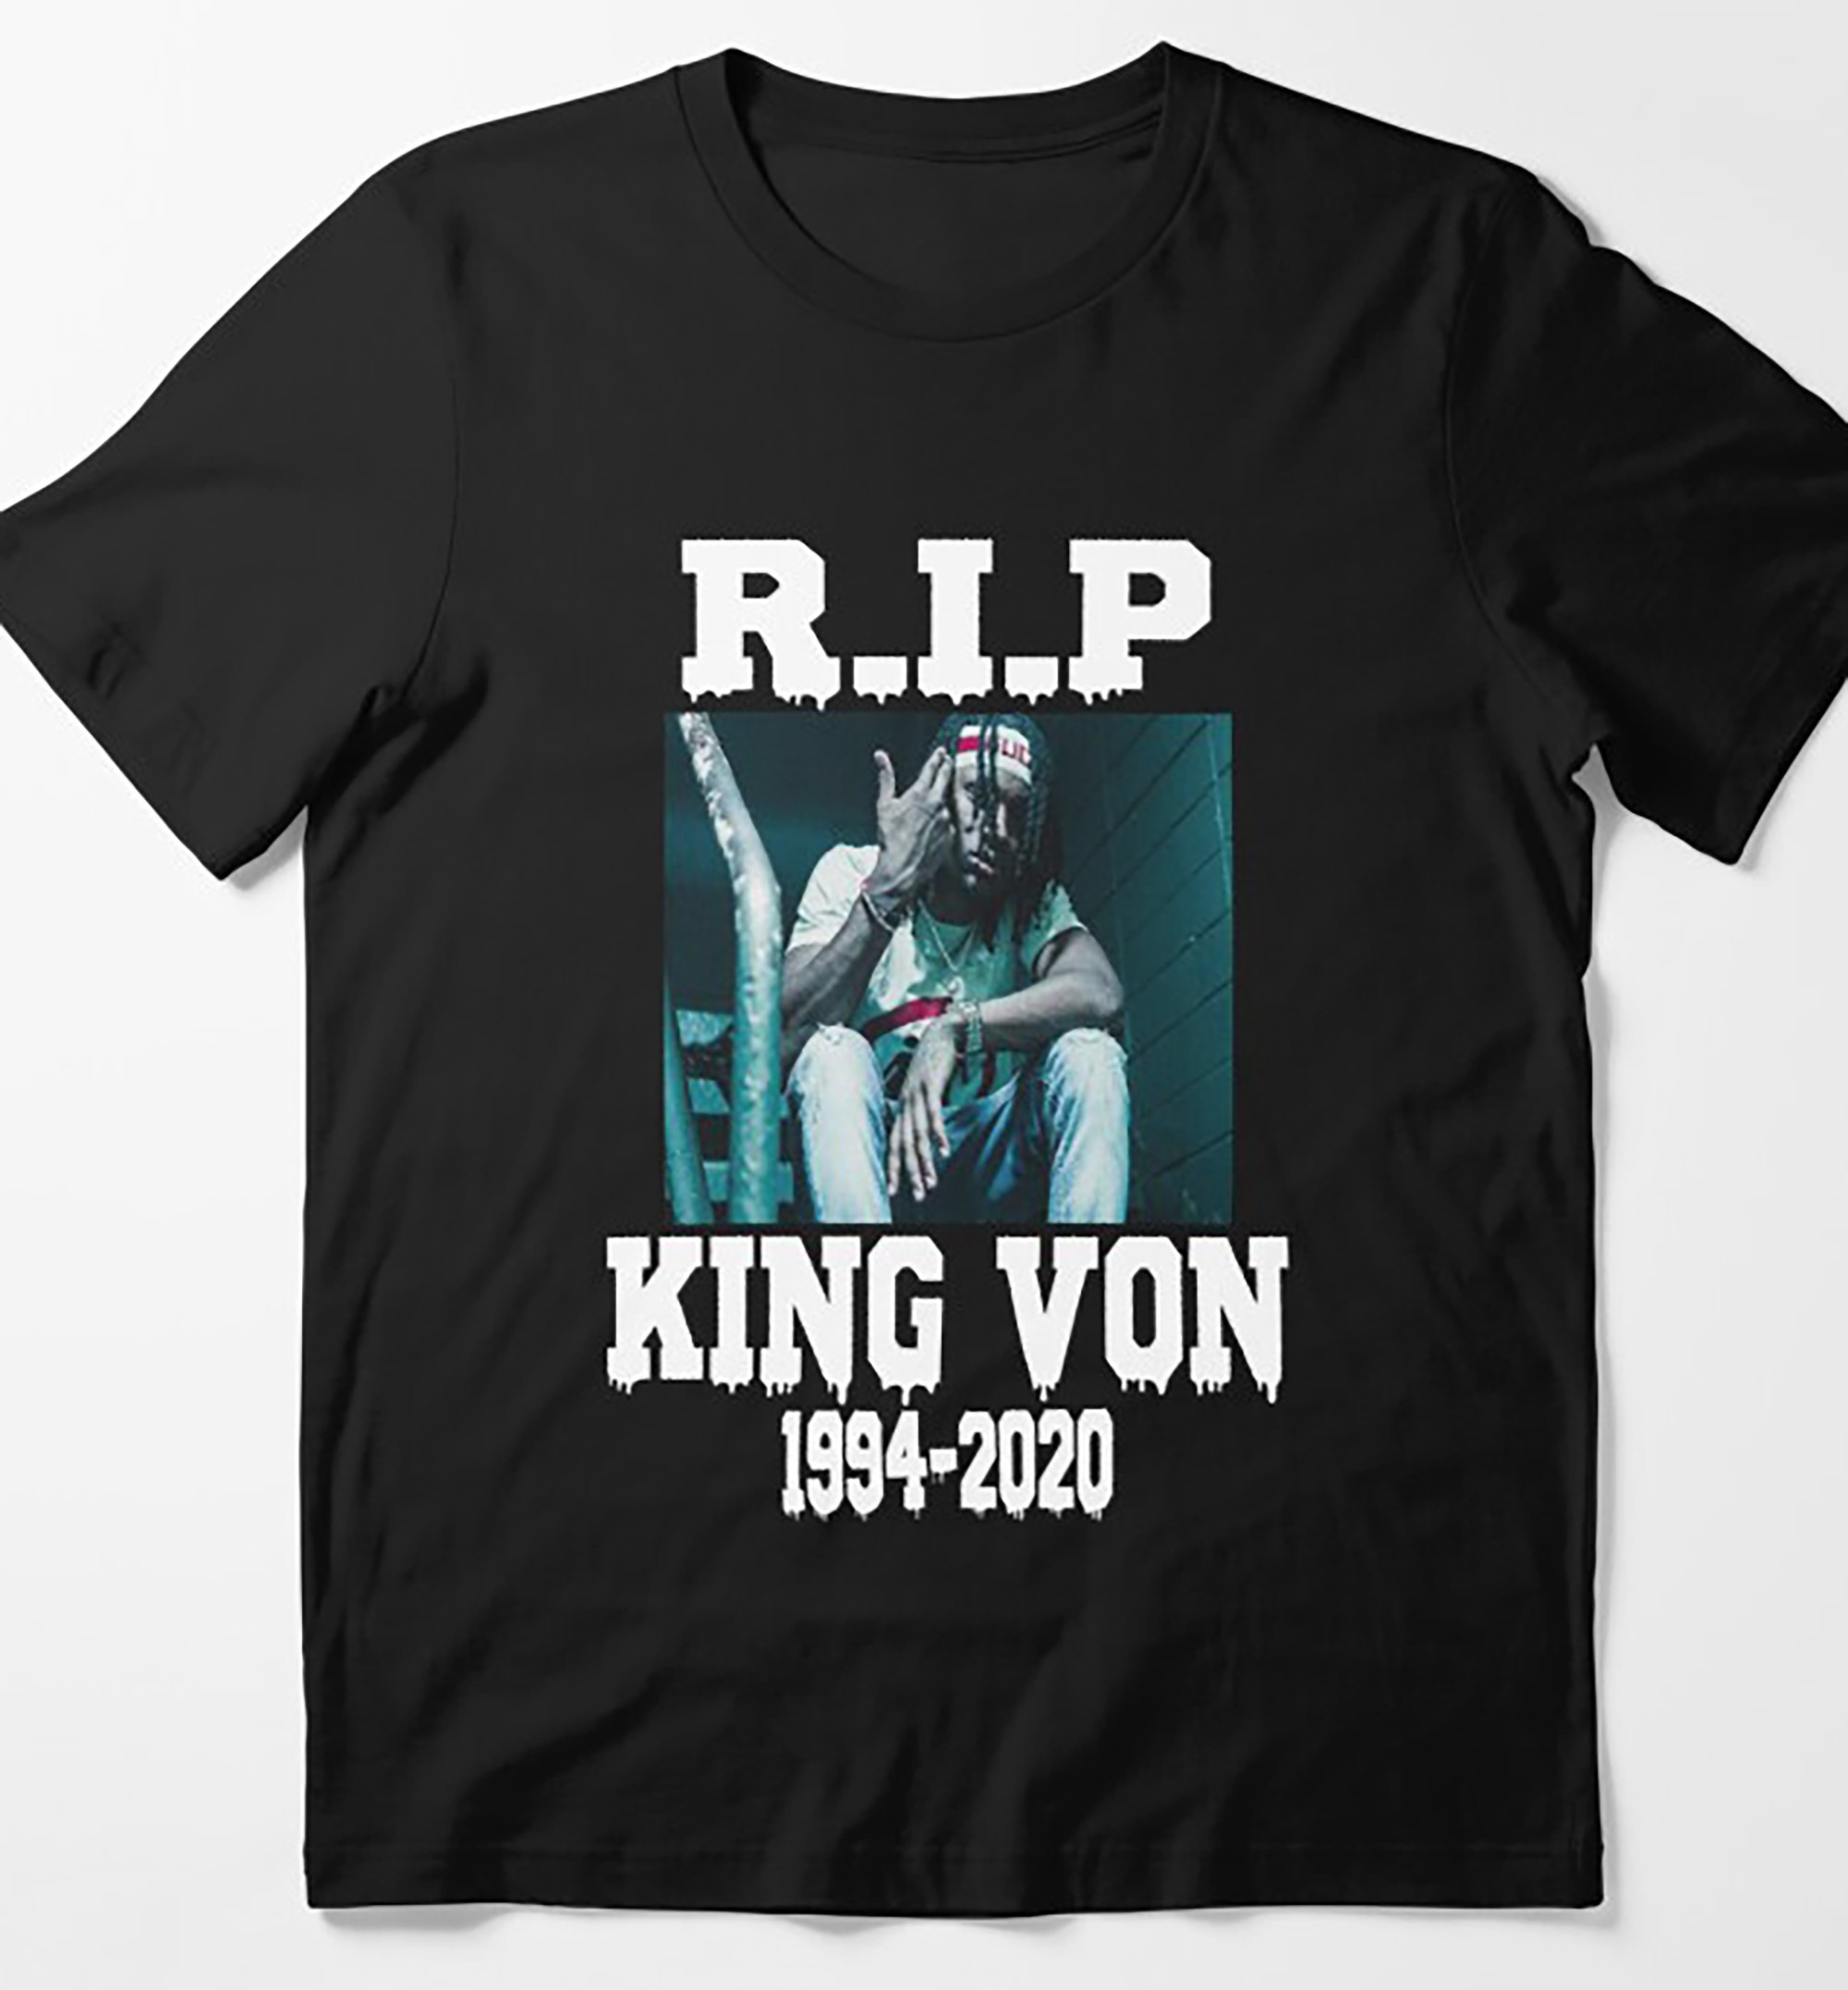 RIP KING VON PICTURES